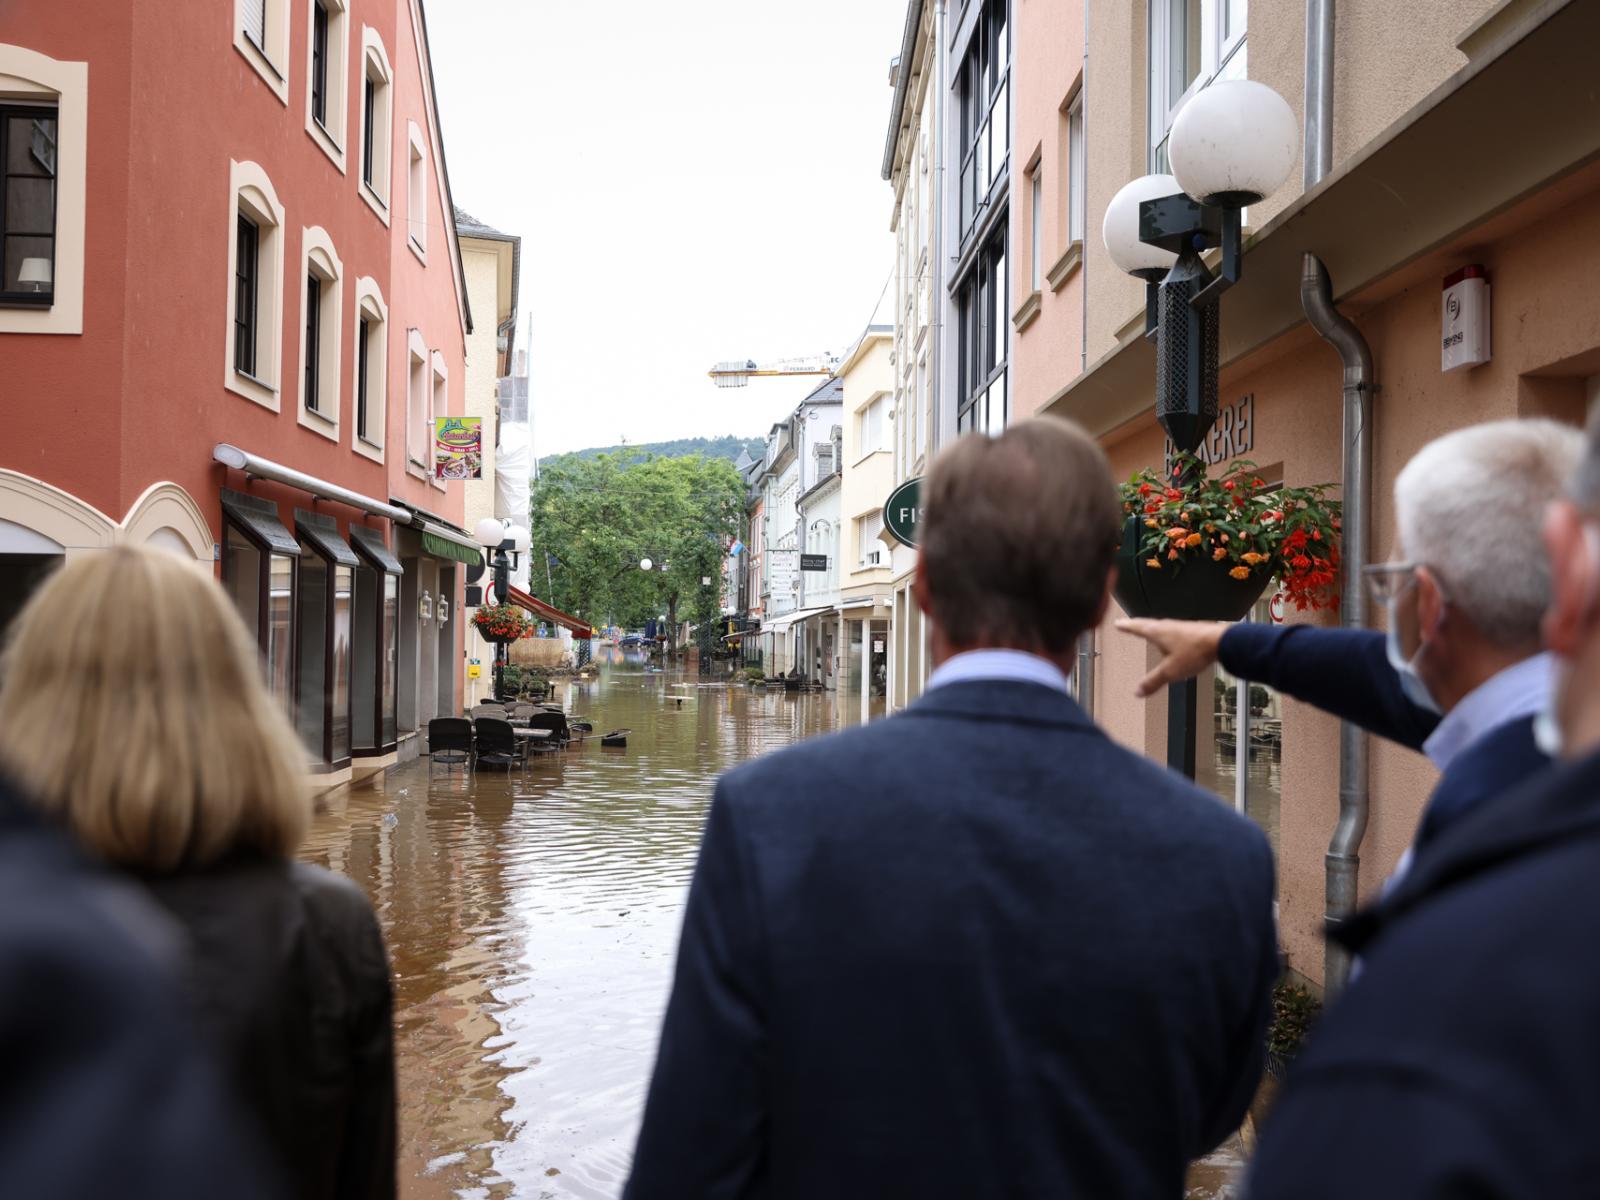 Le rues inondées d'Echternach